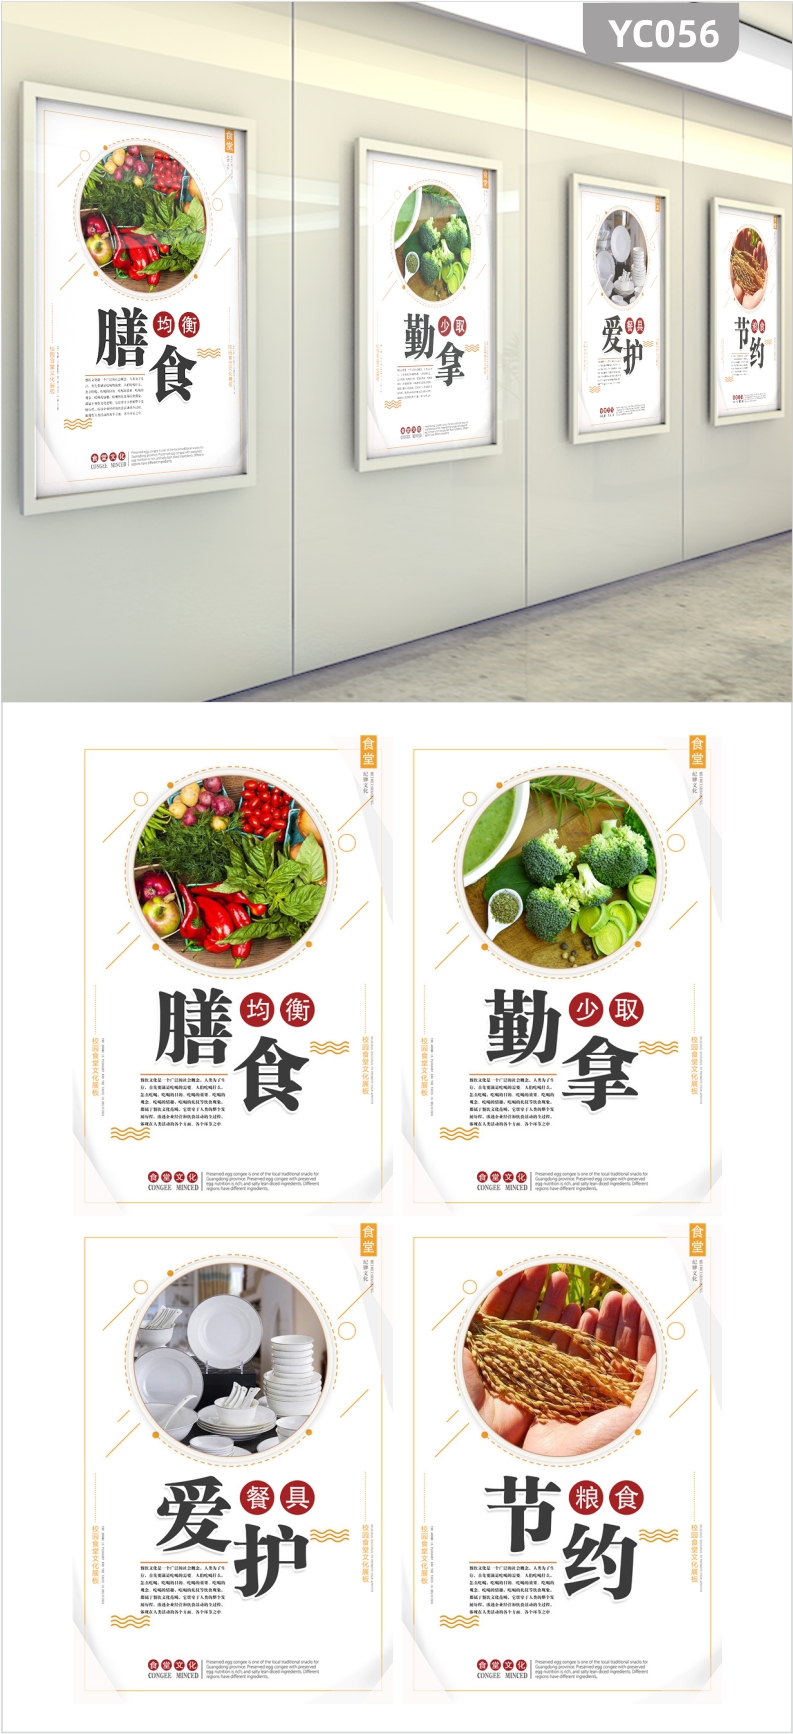 校园企业食堂文化展板装饰画海报宣传挂画膳食均衡节约粮食蔬菜图片